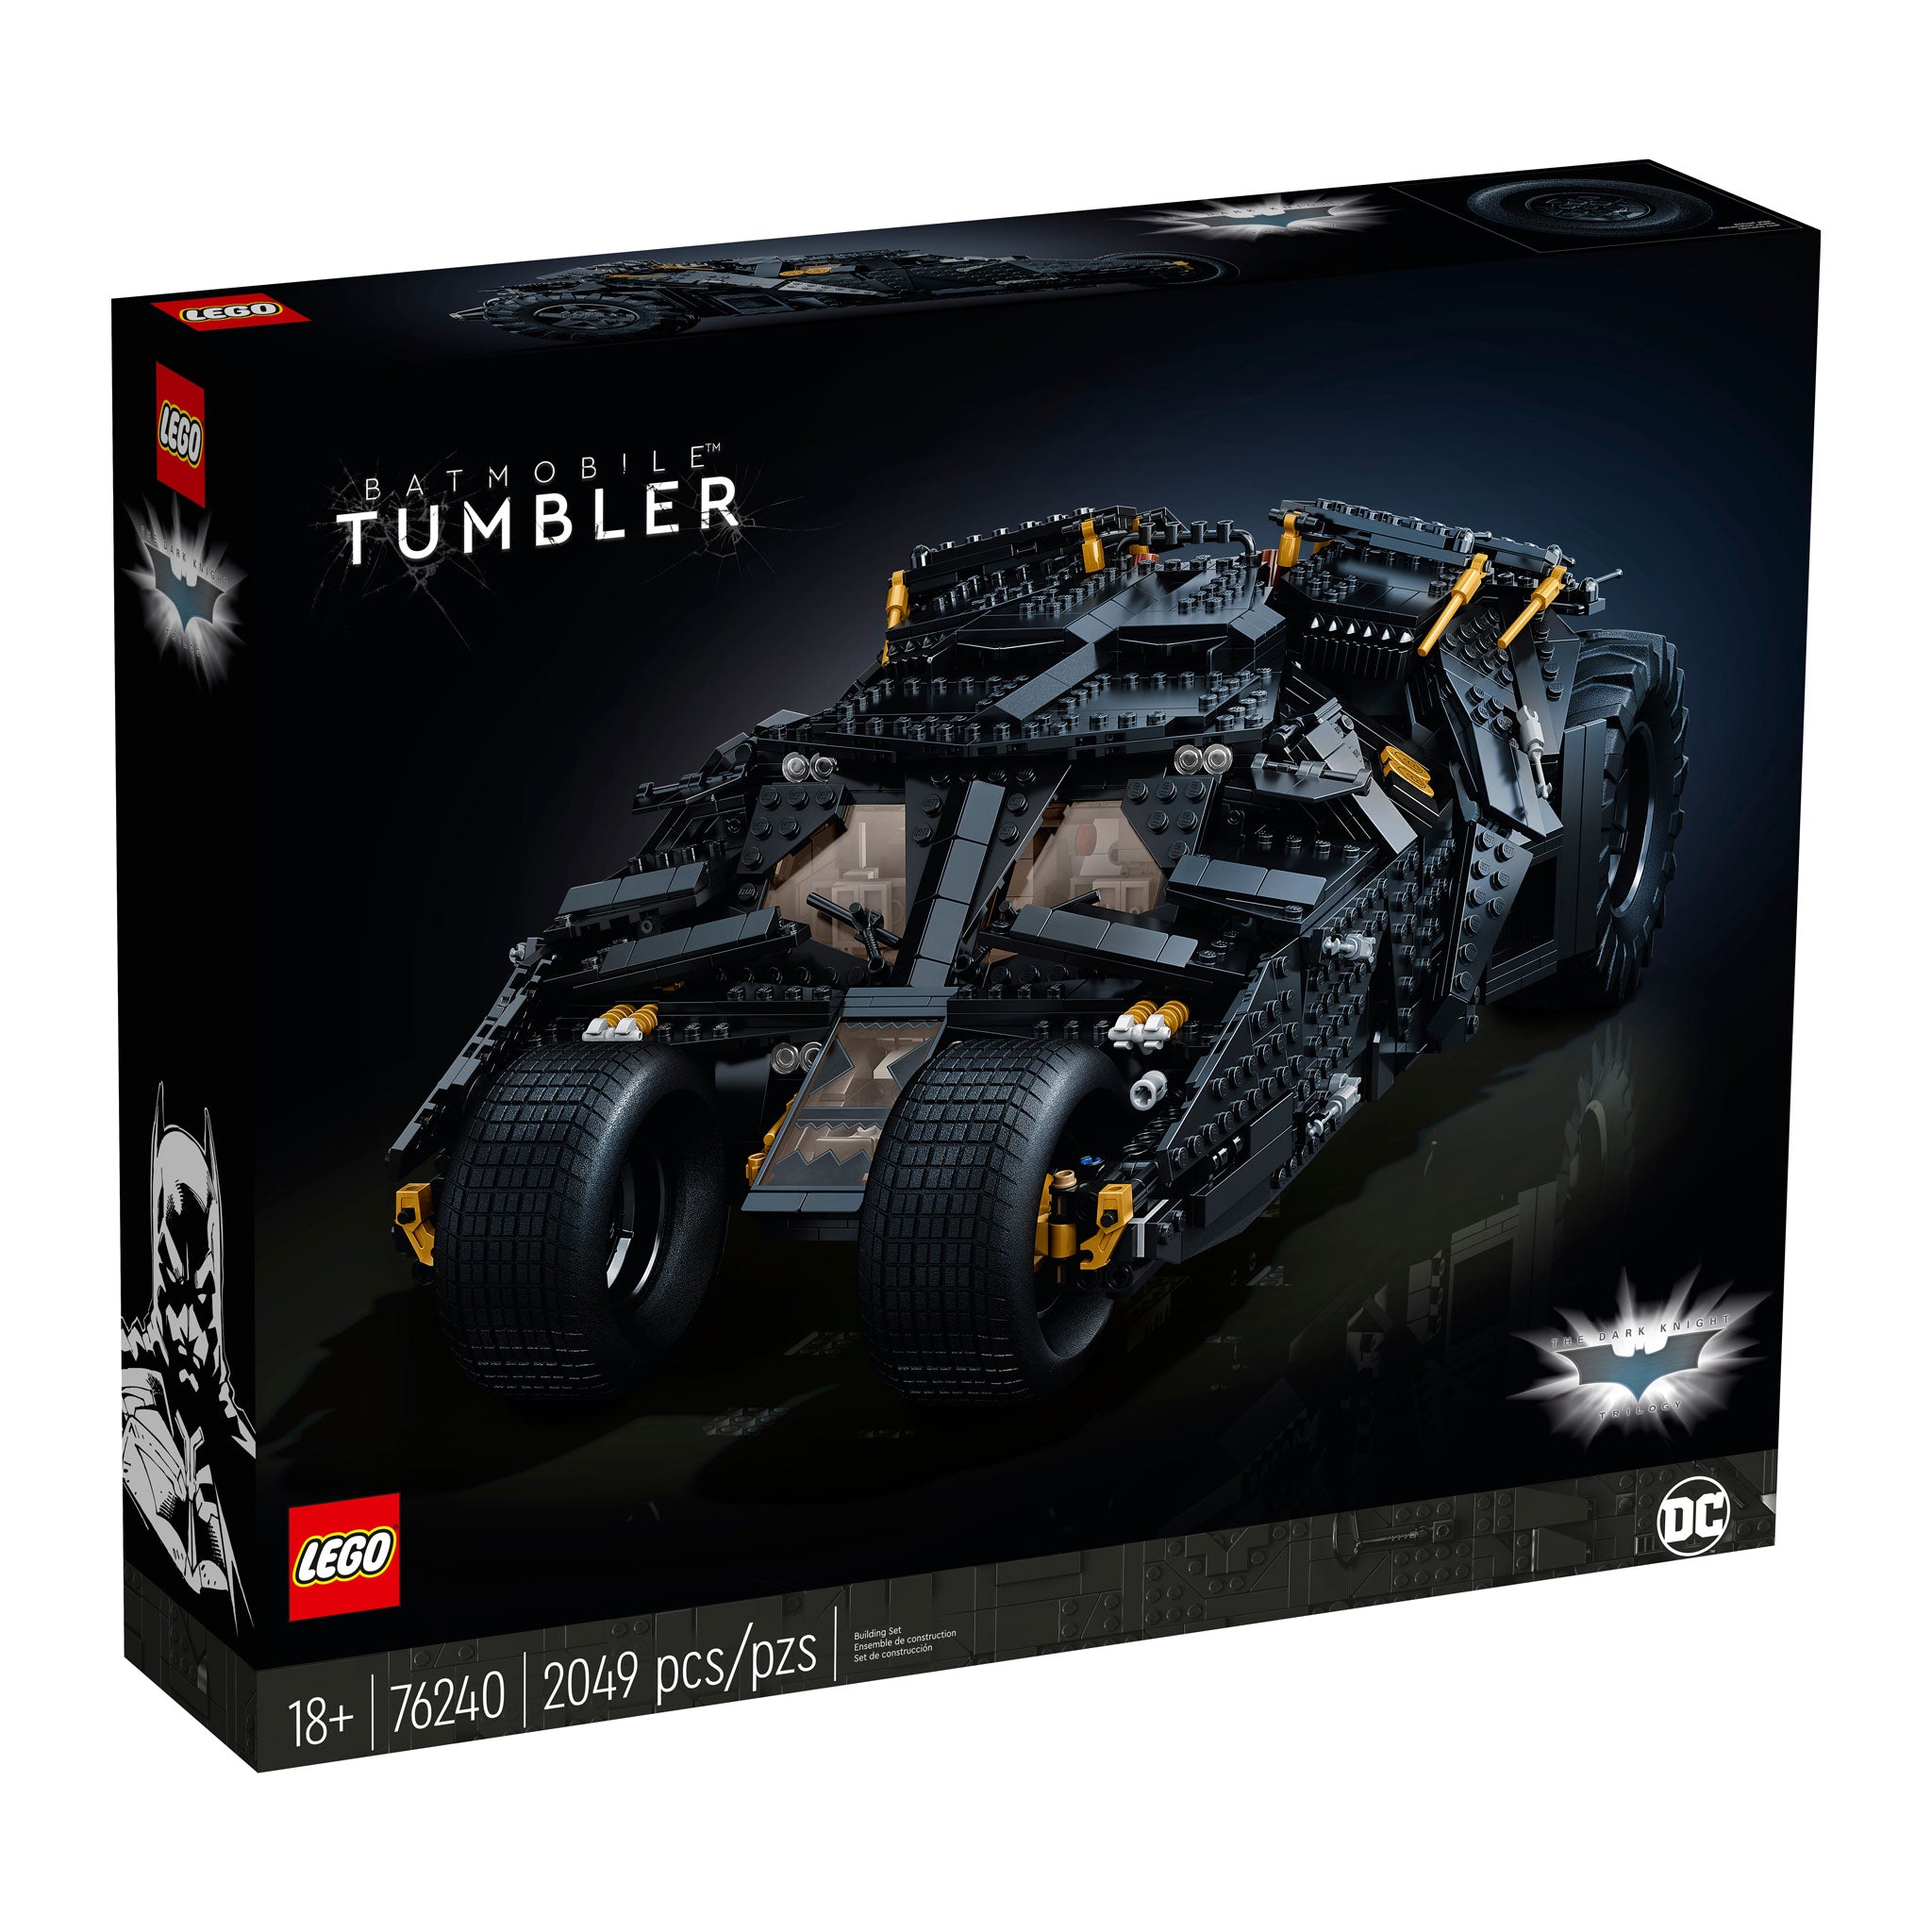 LEGO Batman Batmobile Tumbler (76240) - im GOLDSTIEN.SHOP verfügbar mit Gratisversand ab Schweizer Lager! (5702017100104)